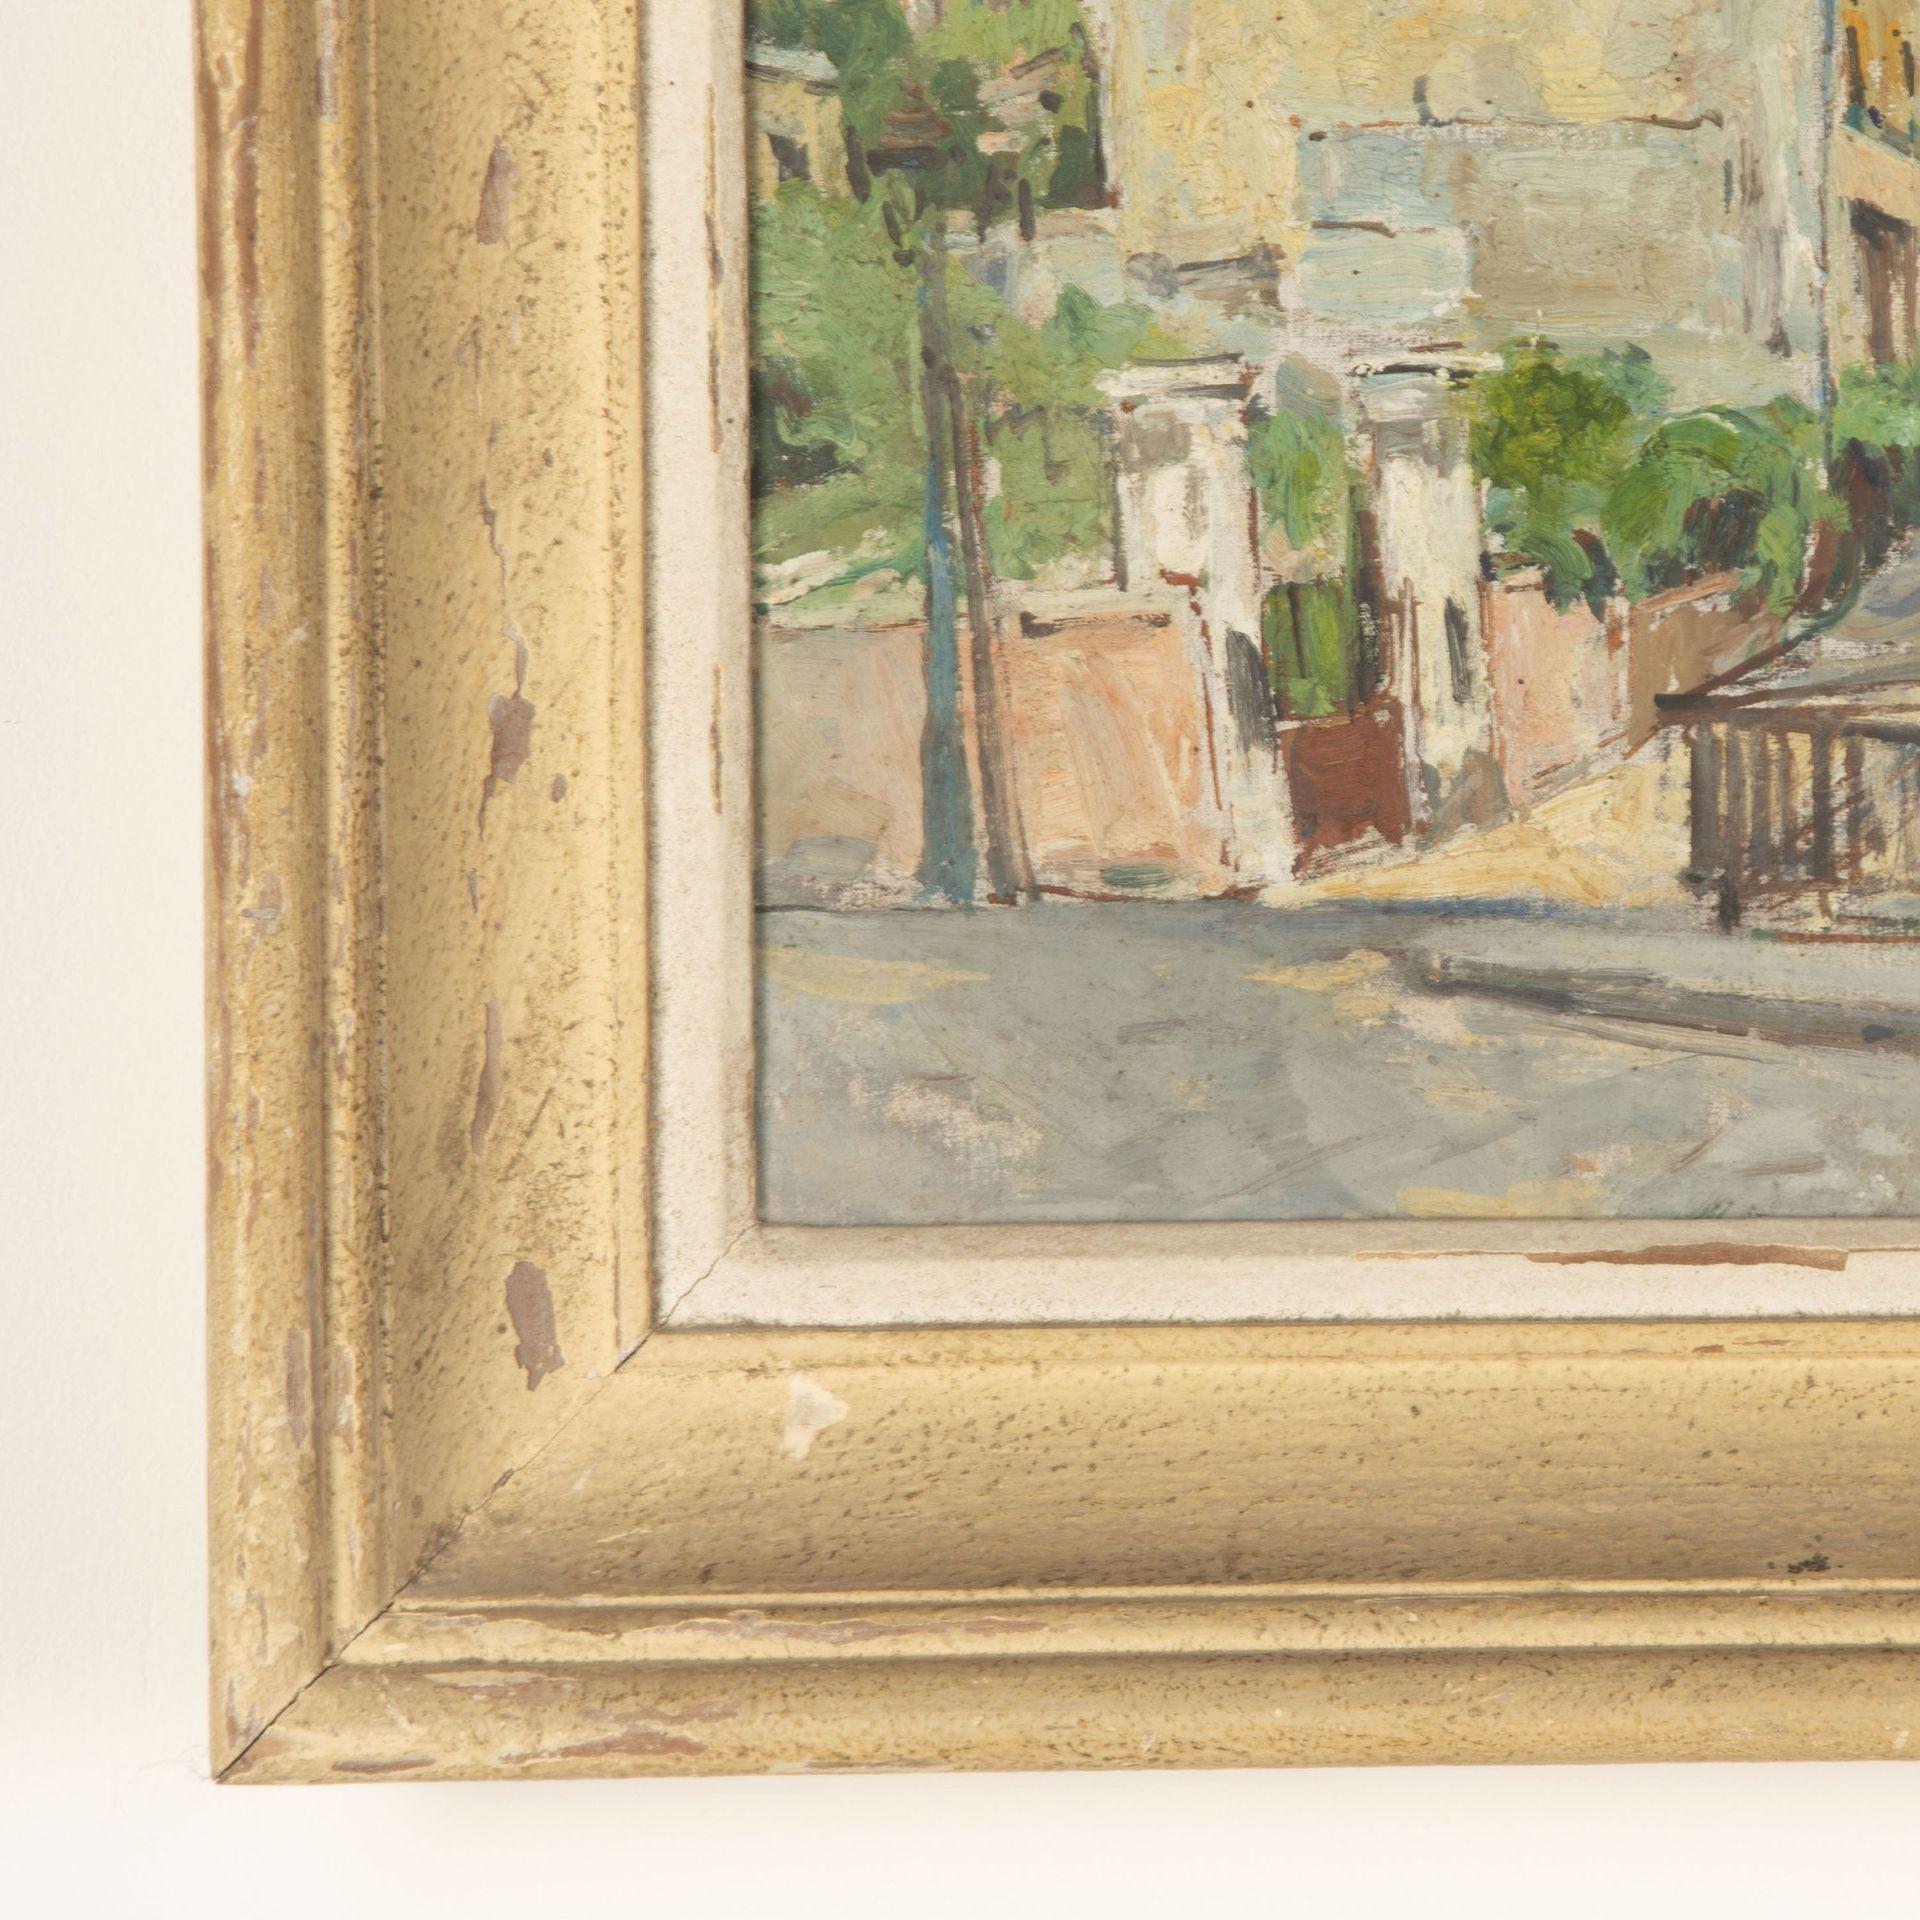 Huile sur toile française du milieu du 20e siècle représentant Montmartre, indistinctement signée, titrée et datée 1947.
Présenté dans un cadre peint de la même époque.